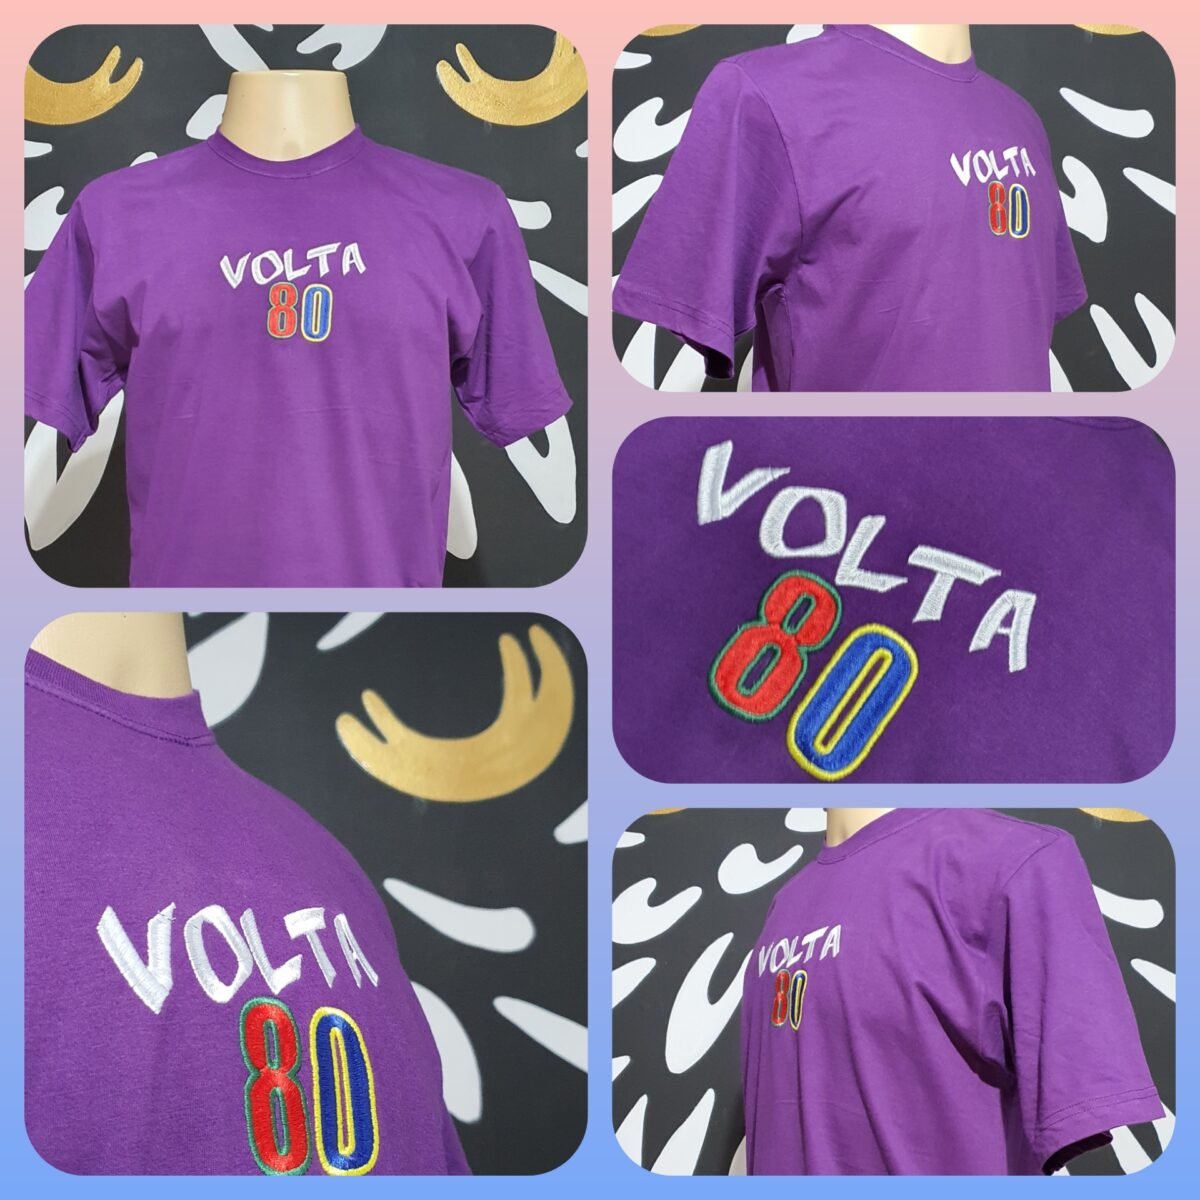 Camiseta Bordada Oficial da Festa Volta 80 by Bordado & Cia - @bordado.cia @volta80